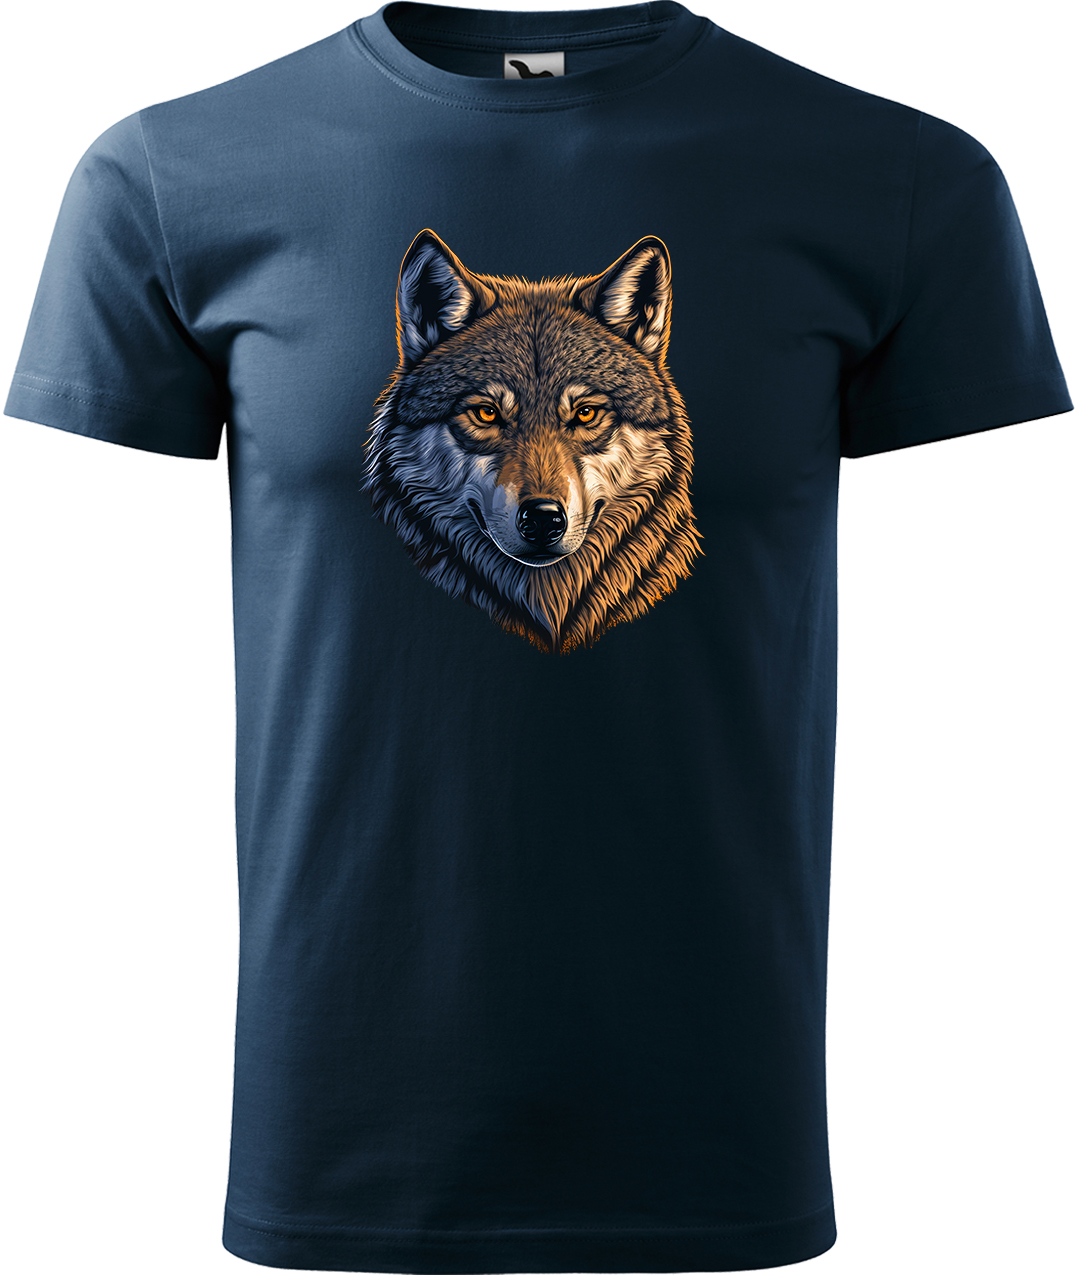 Pánské tričko s vlkem - Hlava vlka Velikost: 3XL, Barva: Námořní modrá (02), Střih: pánský